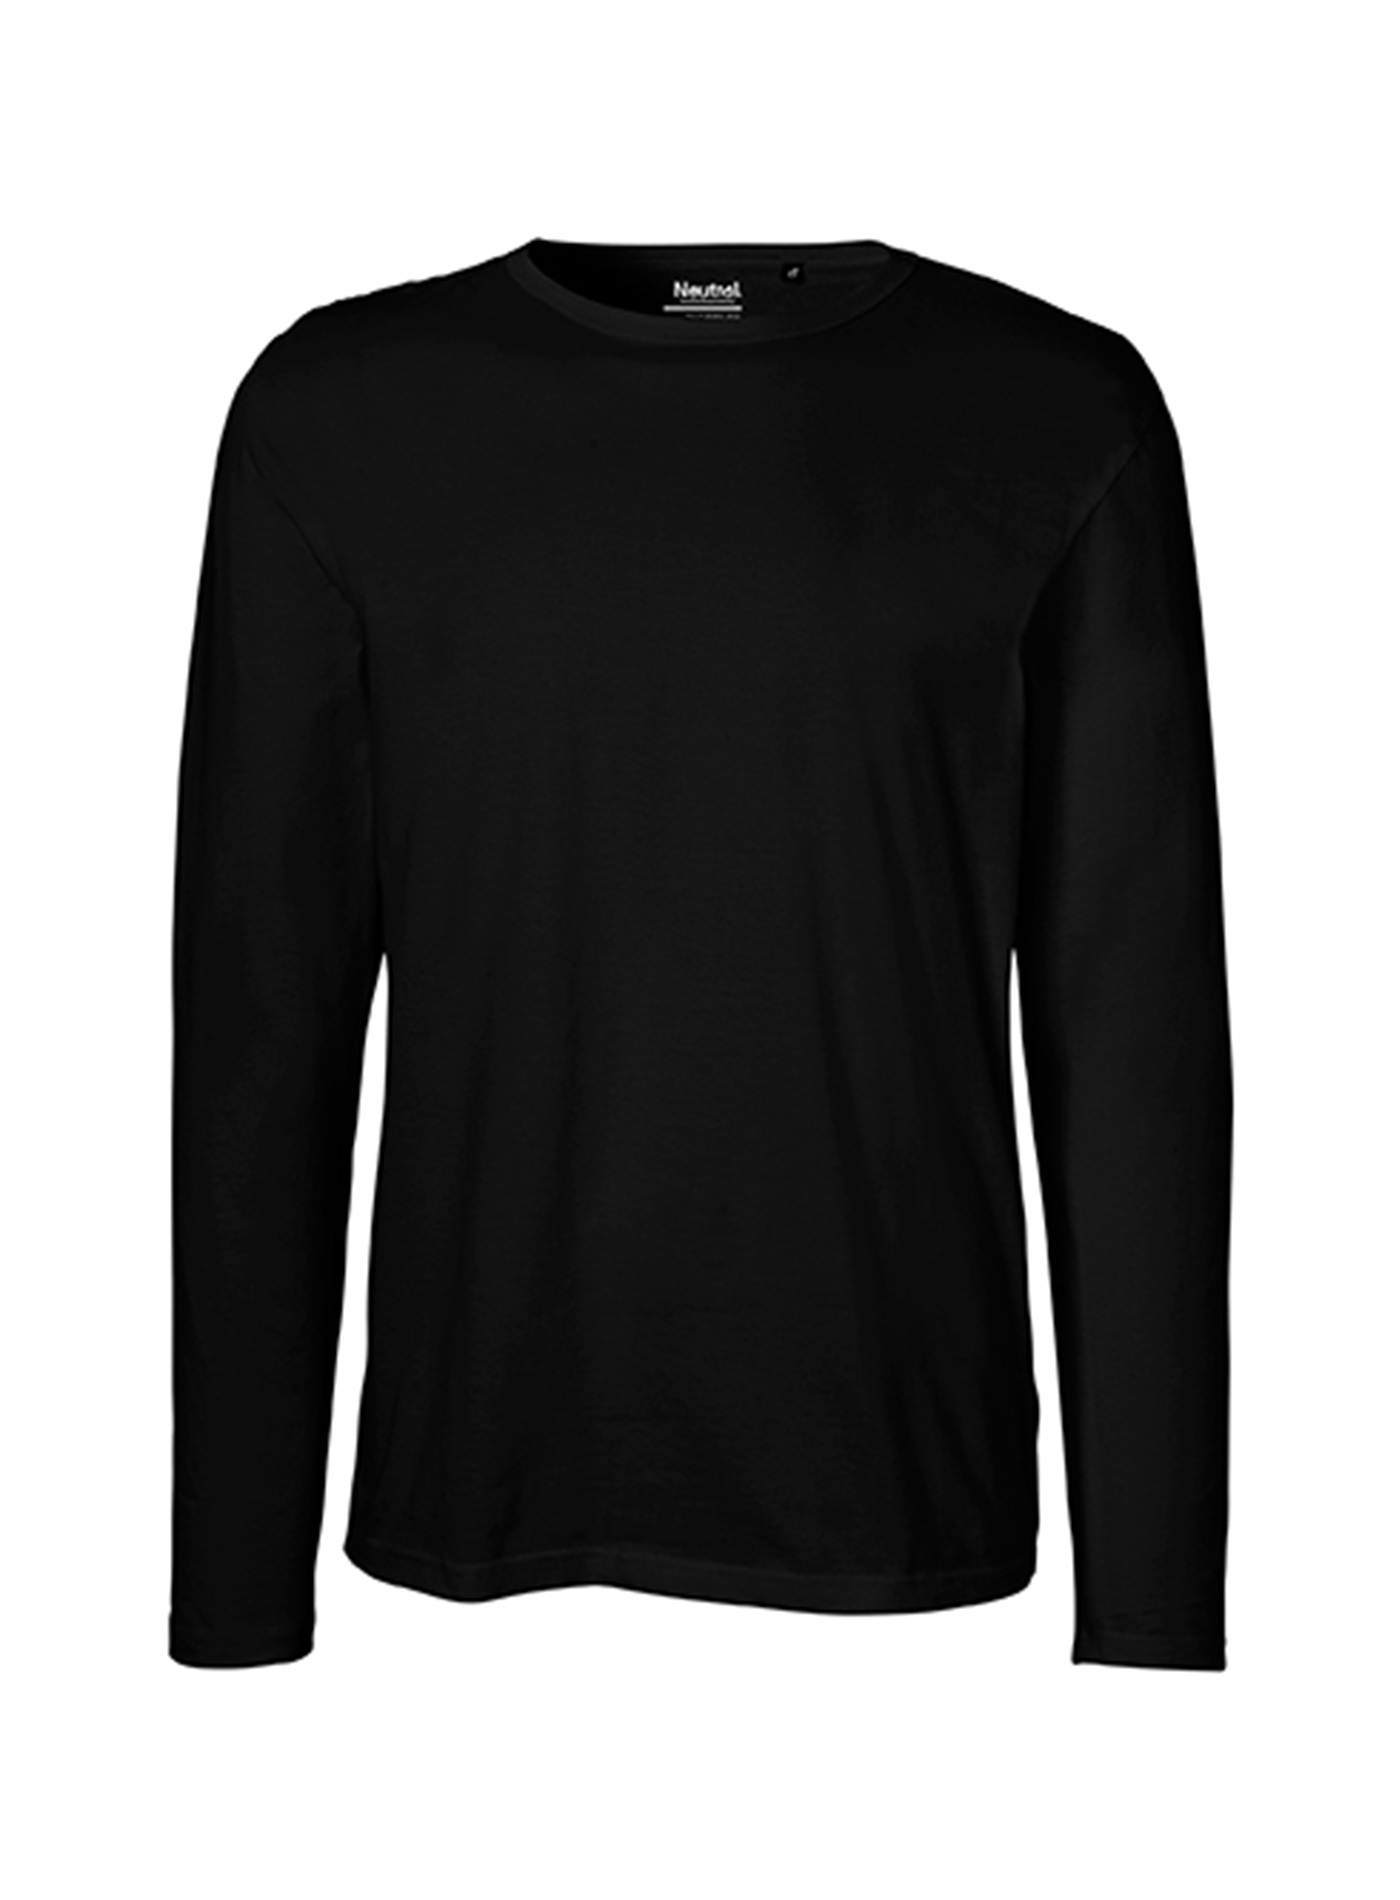 Pánské tričko s dlouhým rukávem Neutral - černá S